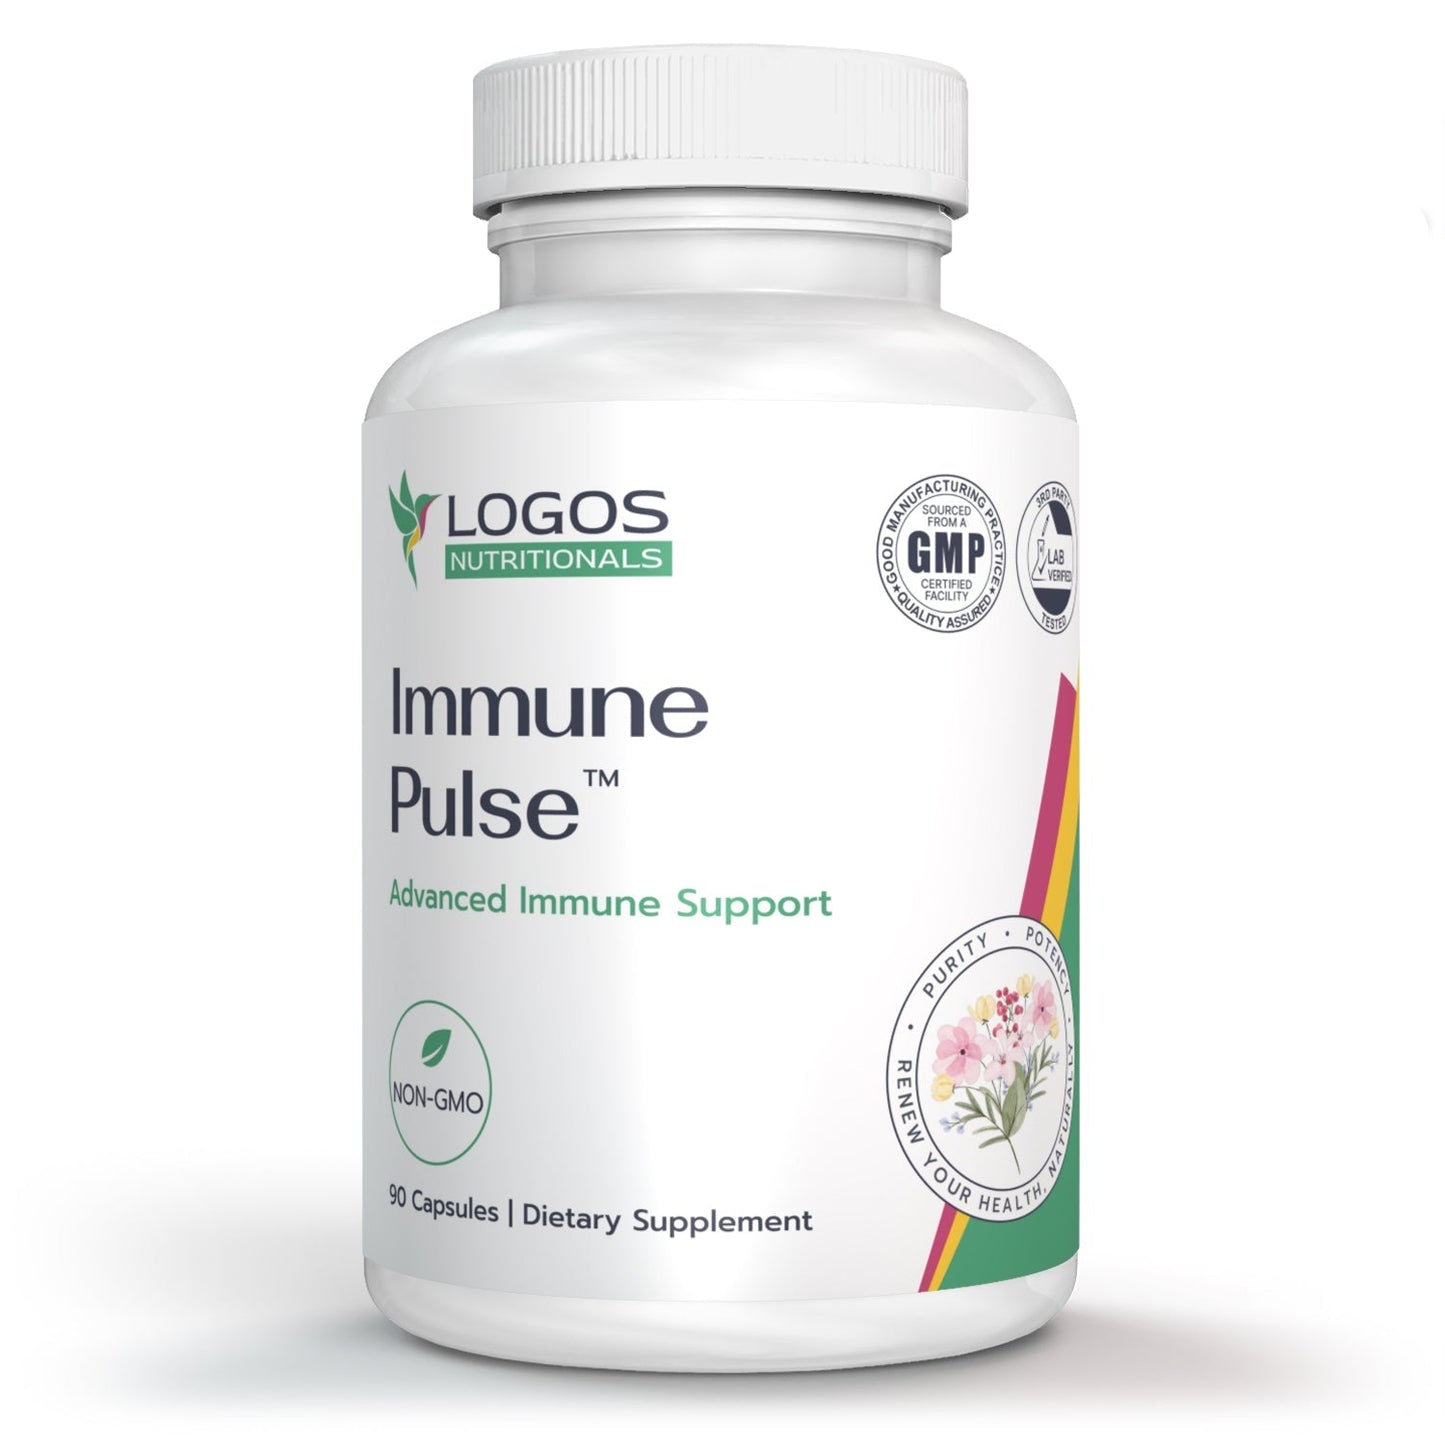 Immune Pulse™